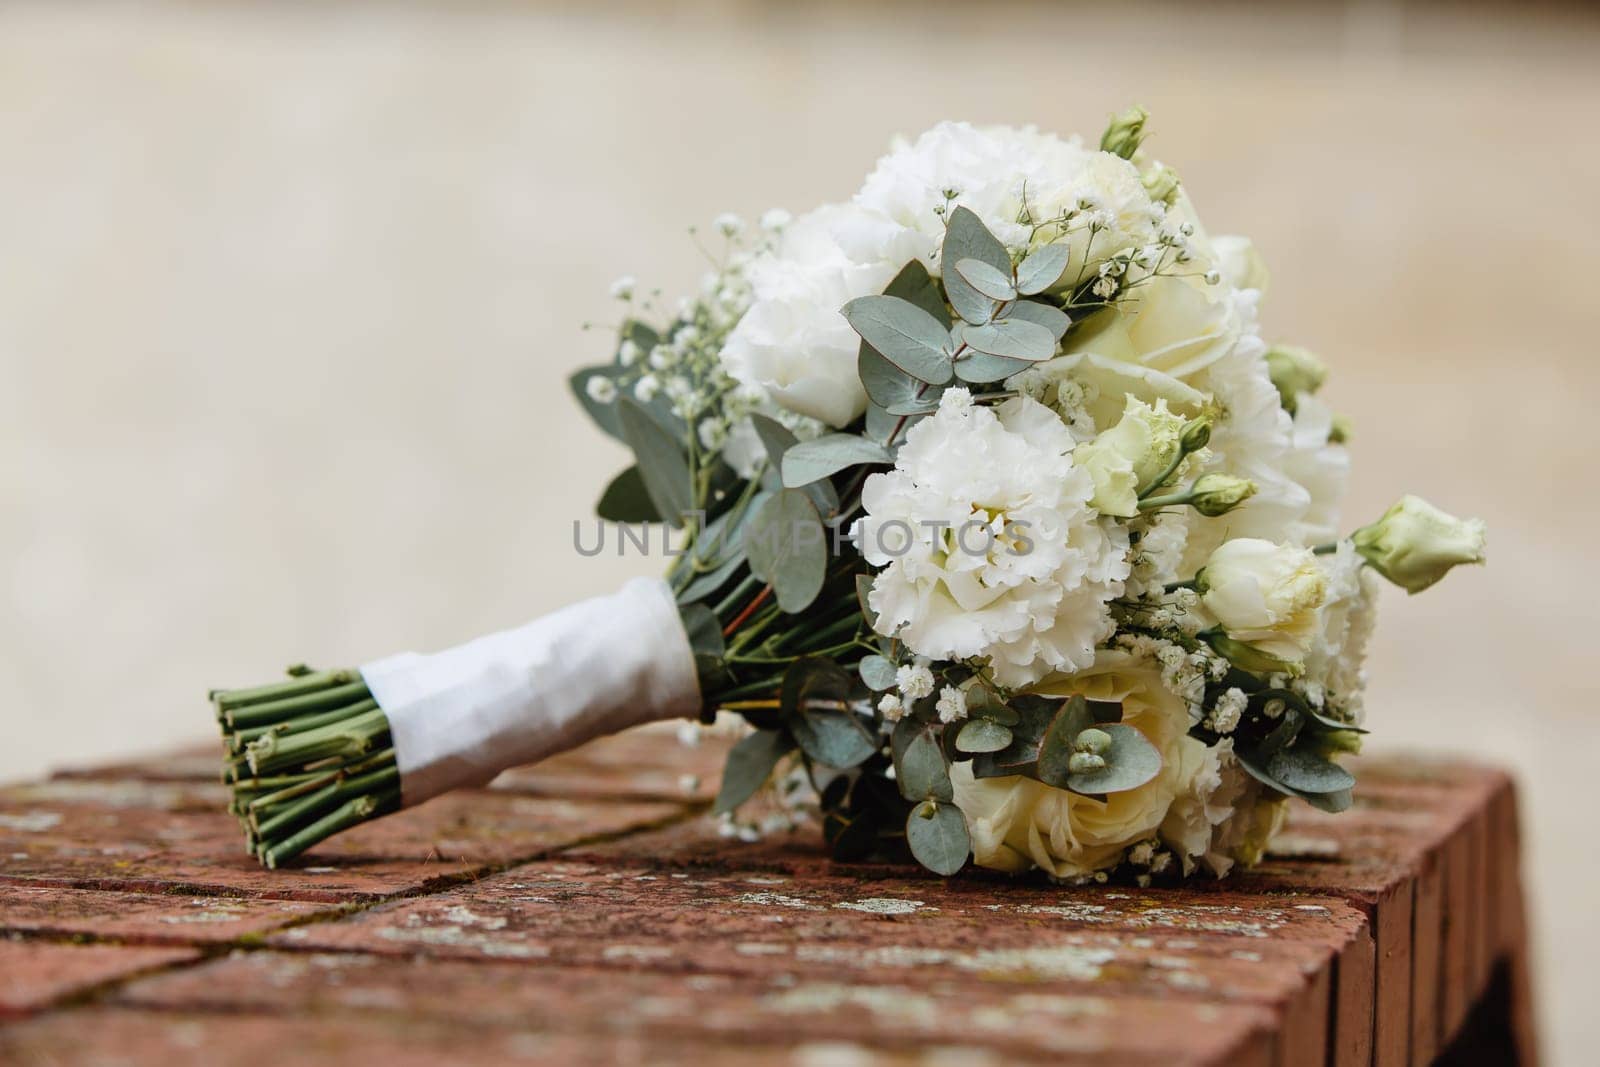 Bride's bouquet of fresh flowers. Close-up. Soft focus.